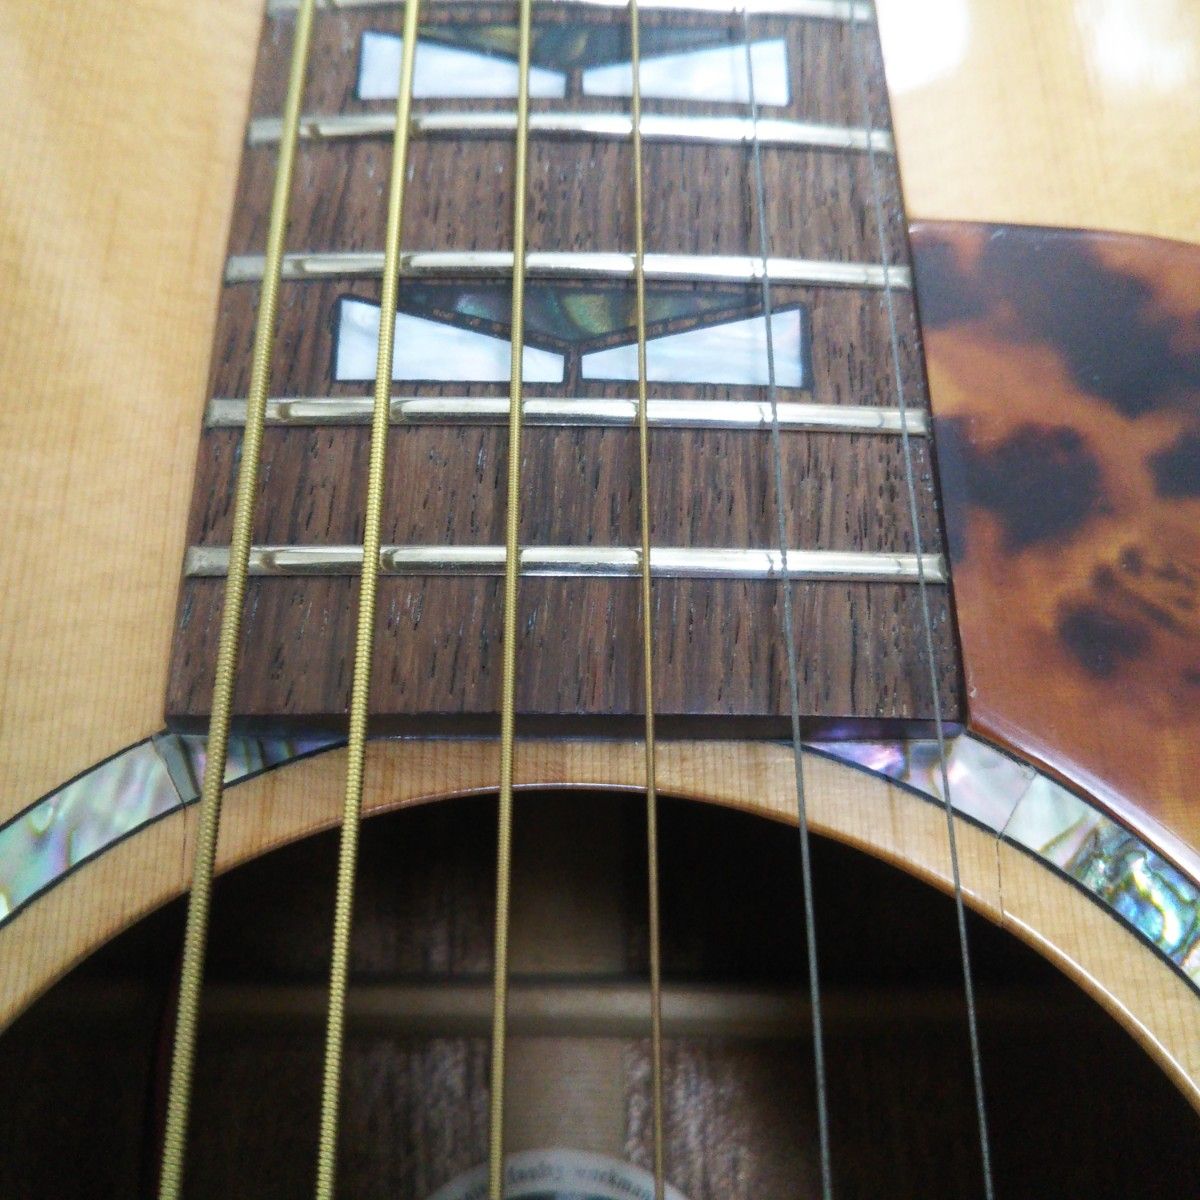 Morris エレアコ G-61 アコースティックギター